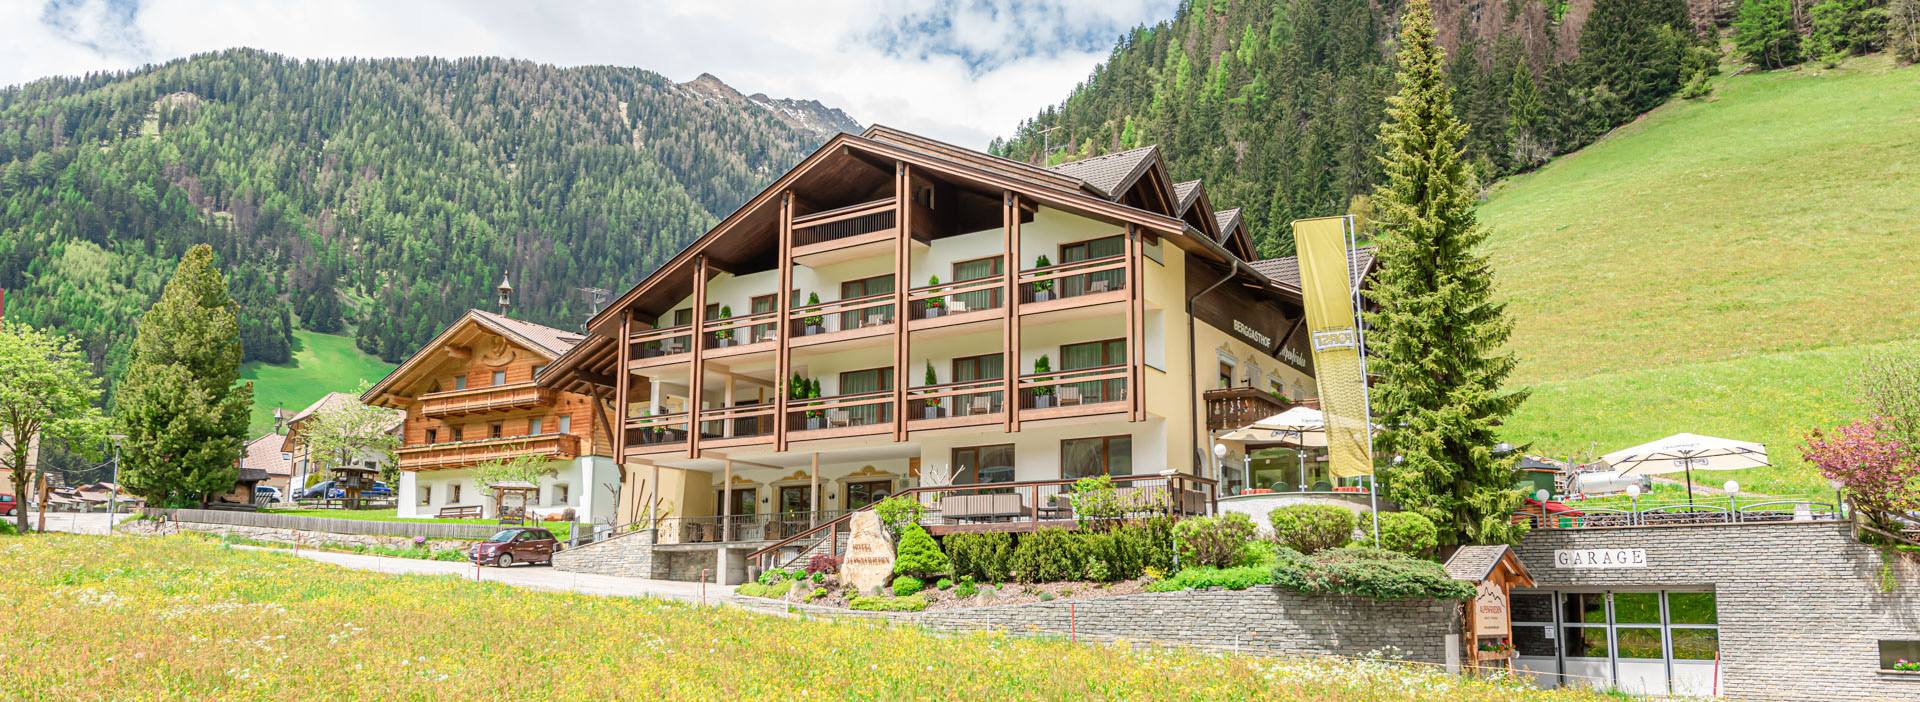 Hotel Alpenfrieden mit Dependance Alpenfrieden